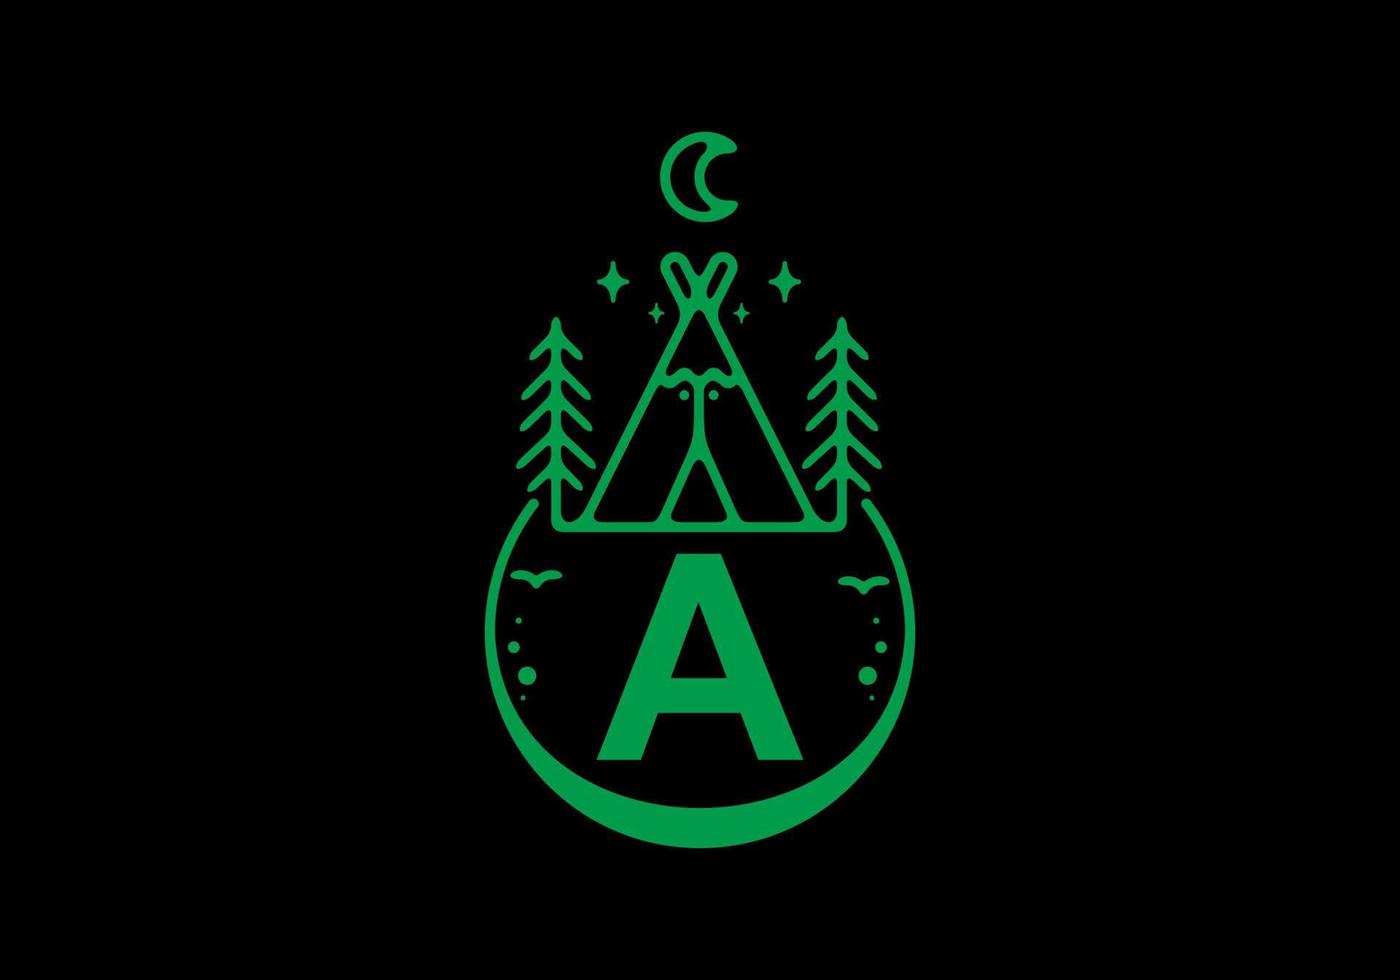 groene kleur van een eerste letter in campingcirkelbadge vector